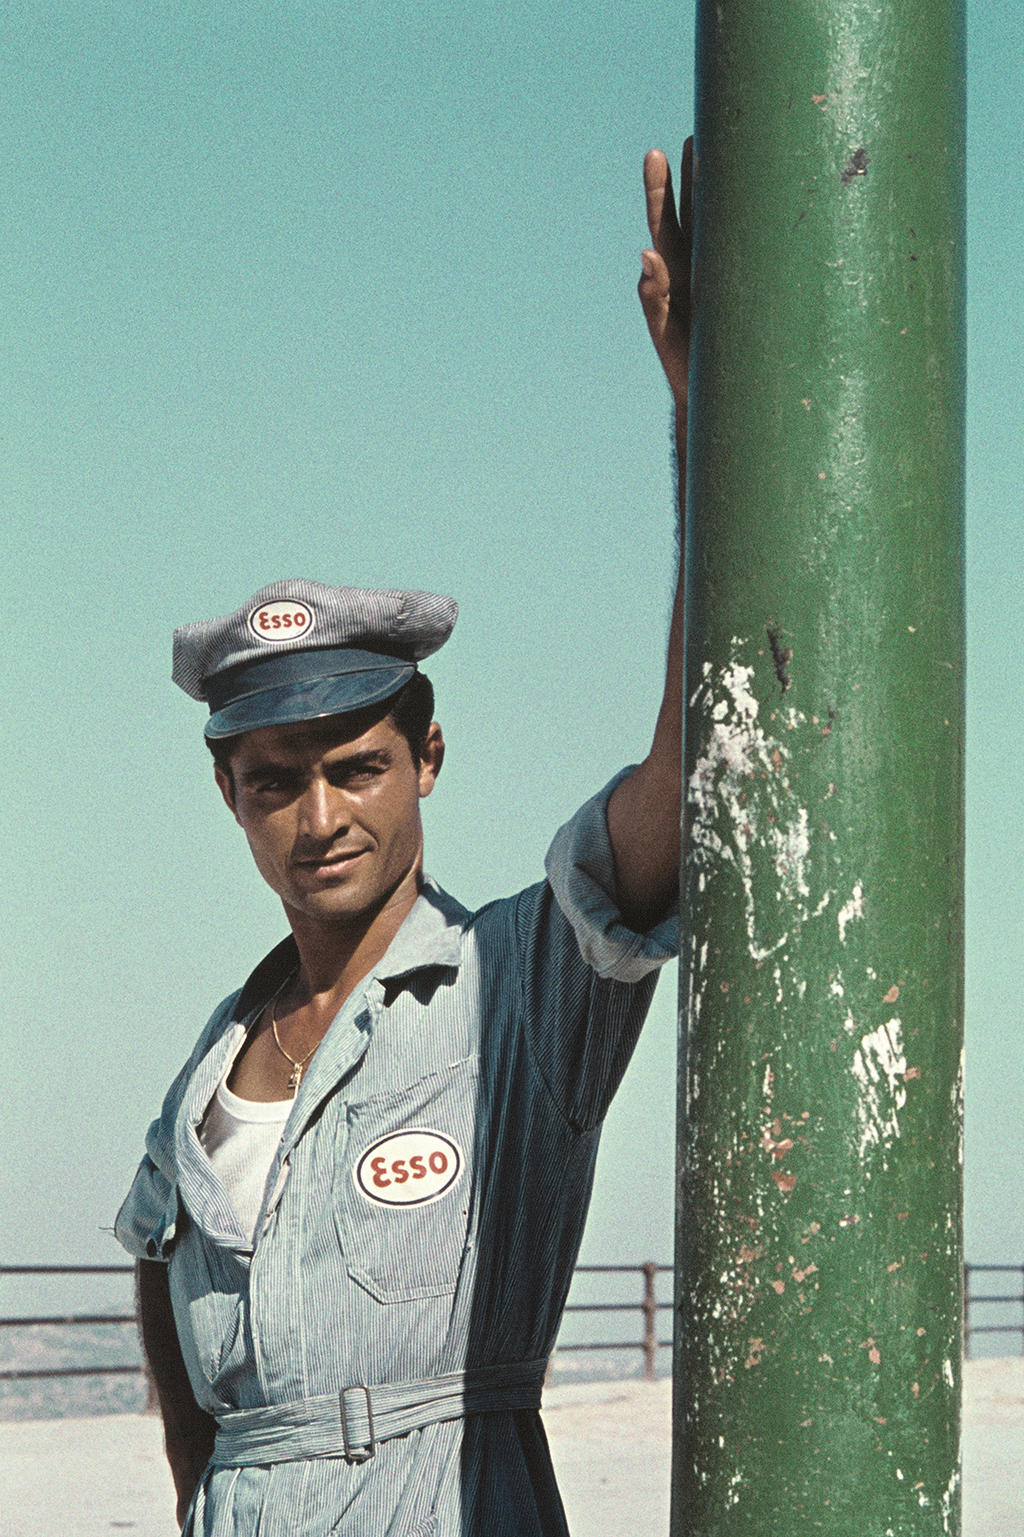 Un hombre enfundado en un uniforme con las siglas de ESSO